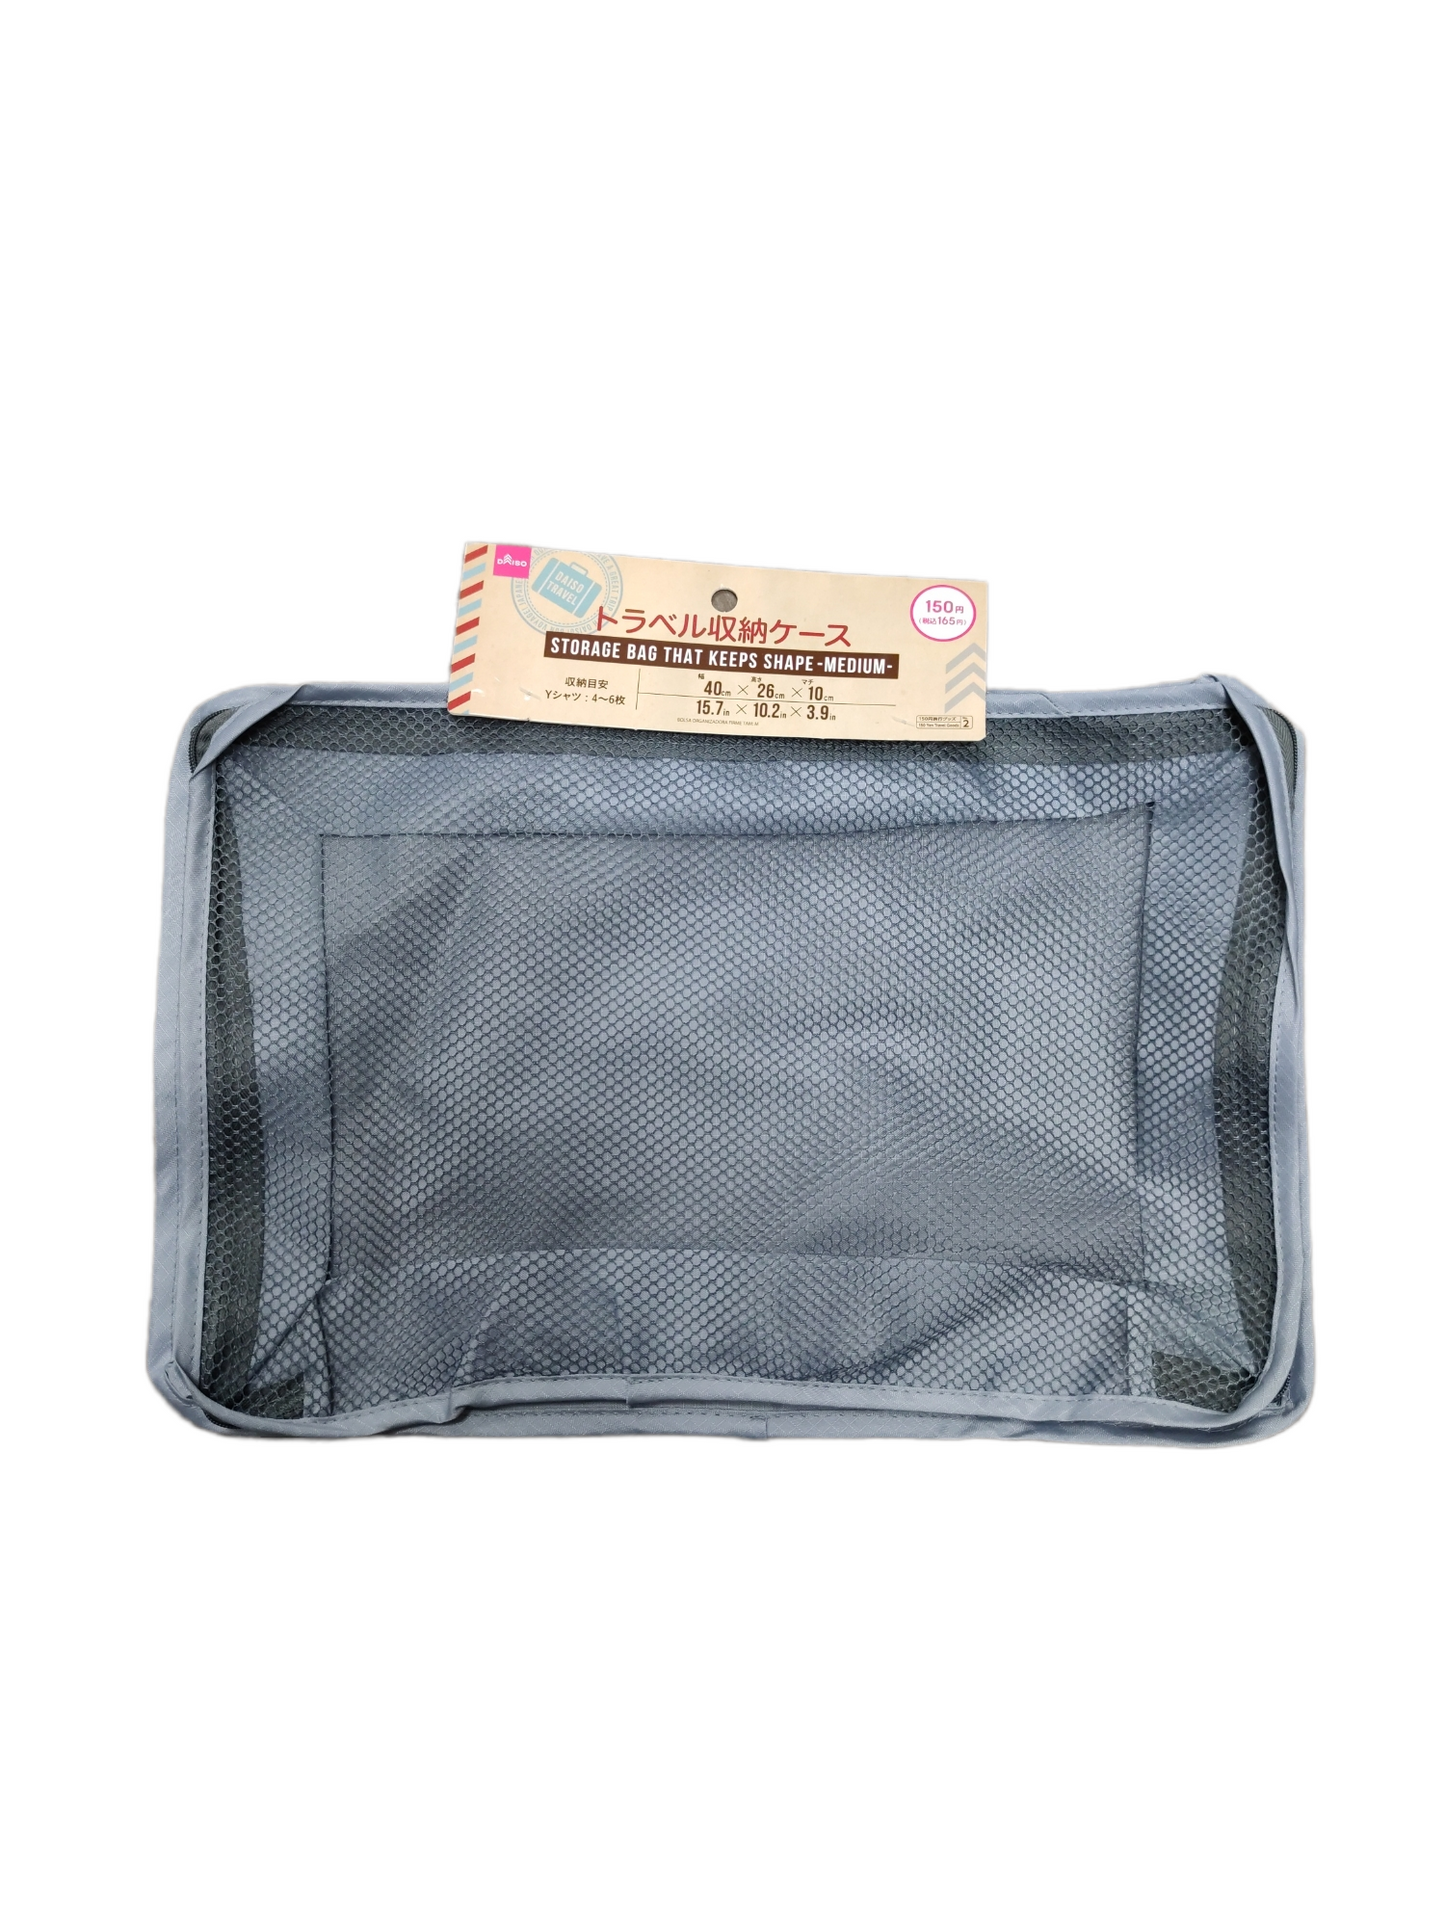 Japan Storage Bag (Medium) 日本旅行儲物箱40x26x10cm